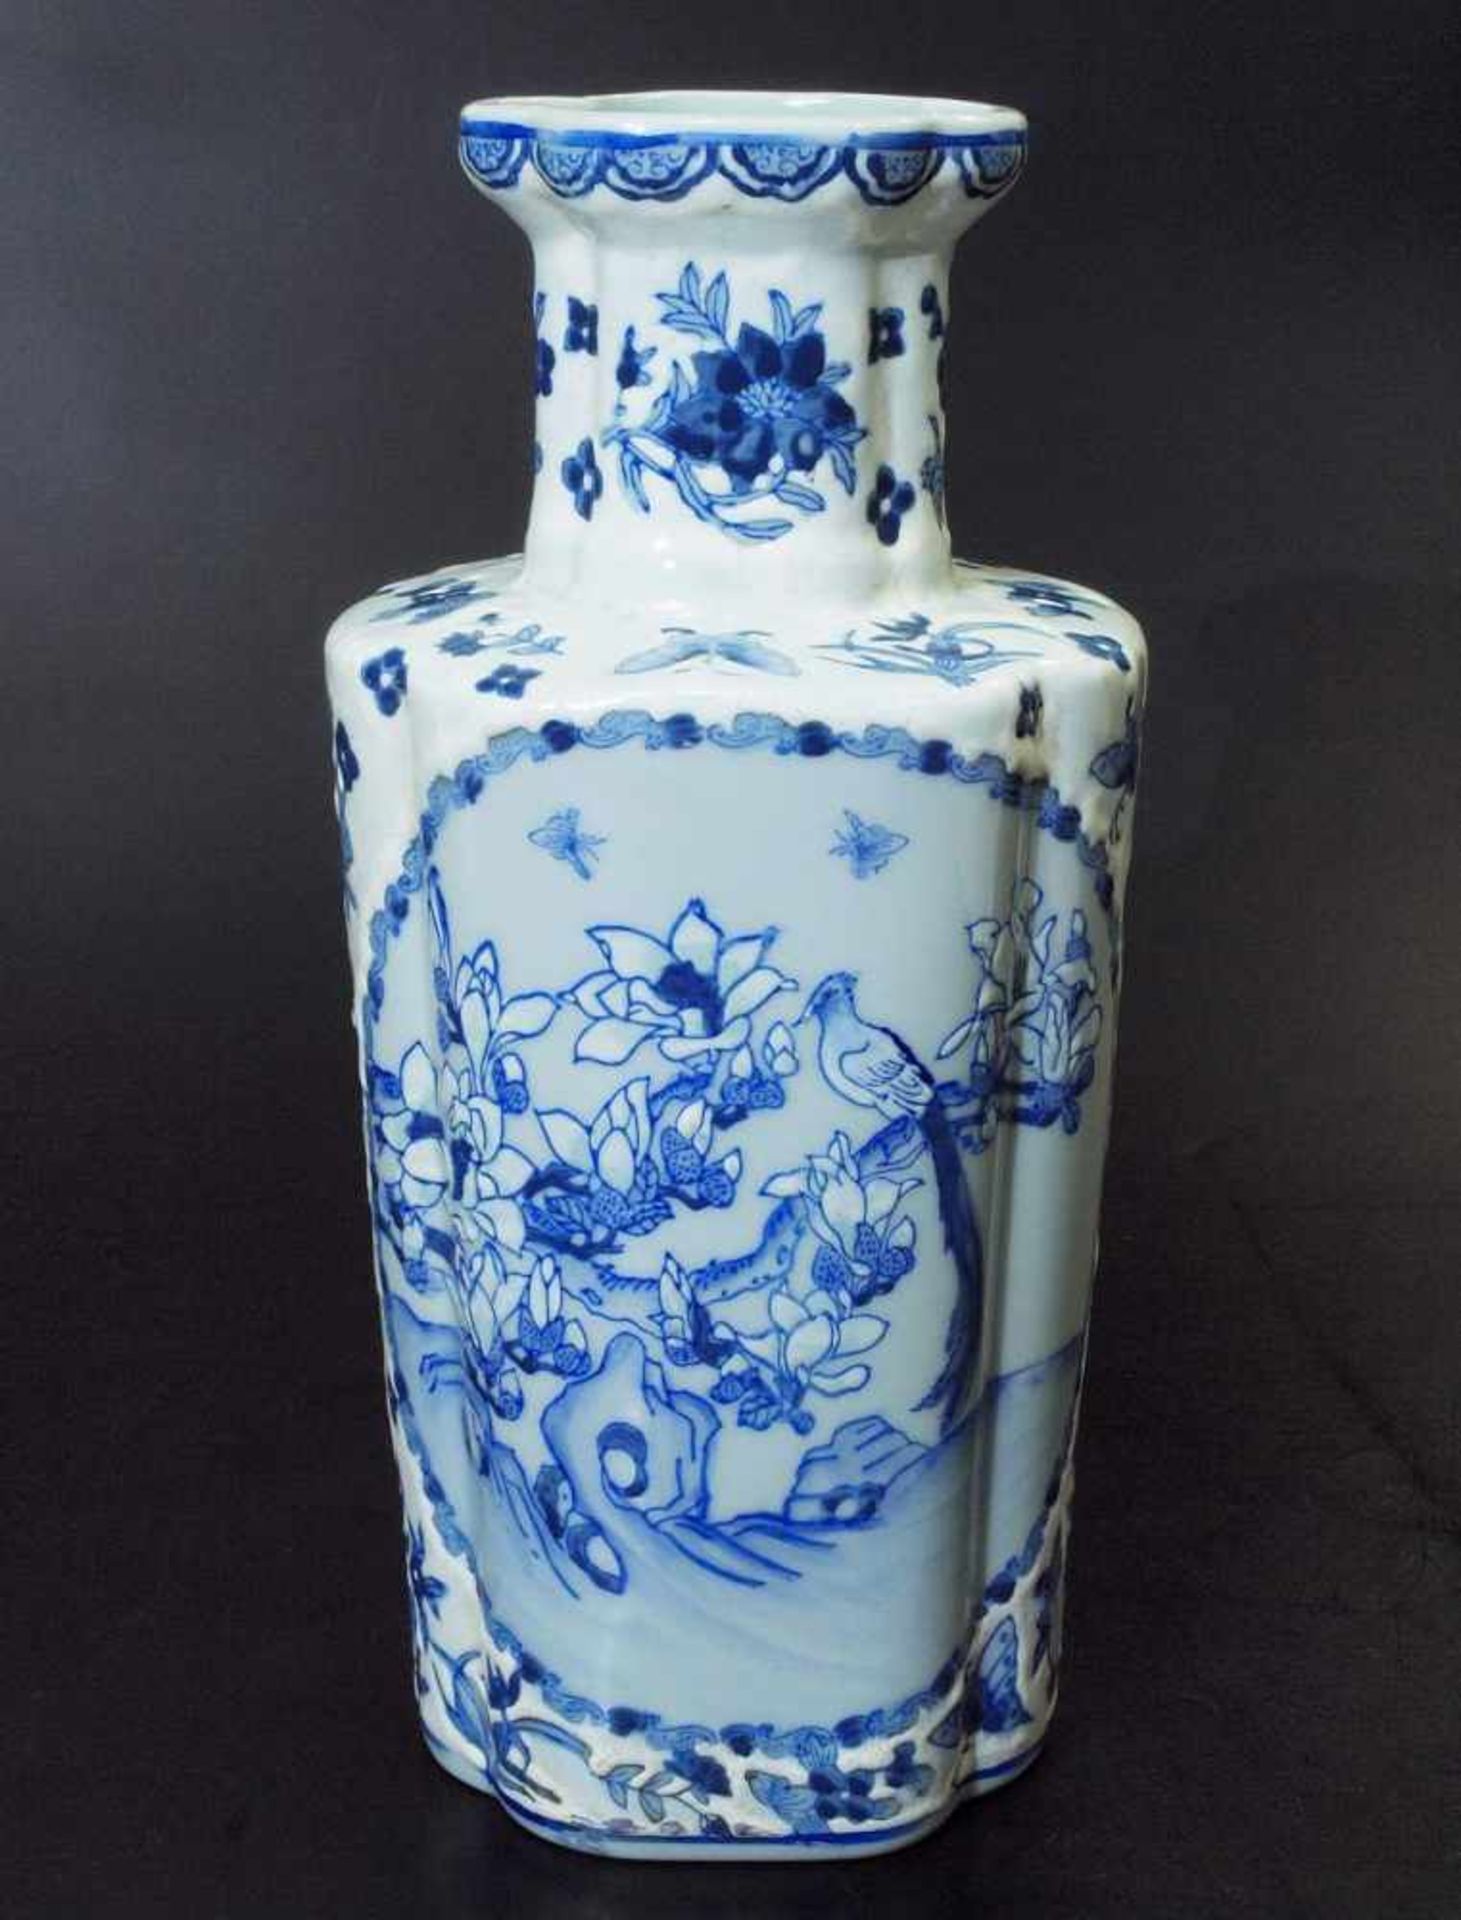 Vase. Vase. Asien, 19. Jahrhundert. Reliefartig ausgearbeitetes florales Dekor in blau-weiß, - Image 2 of 7